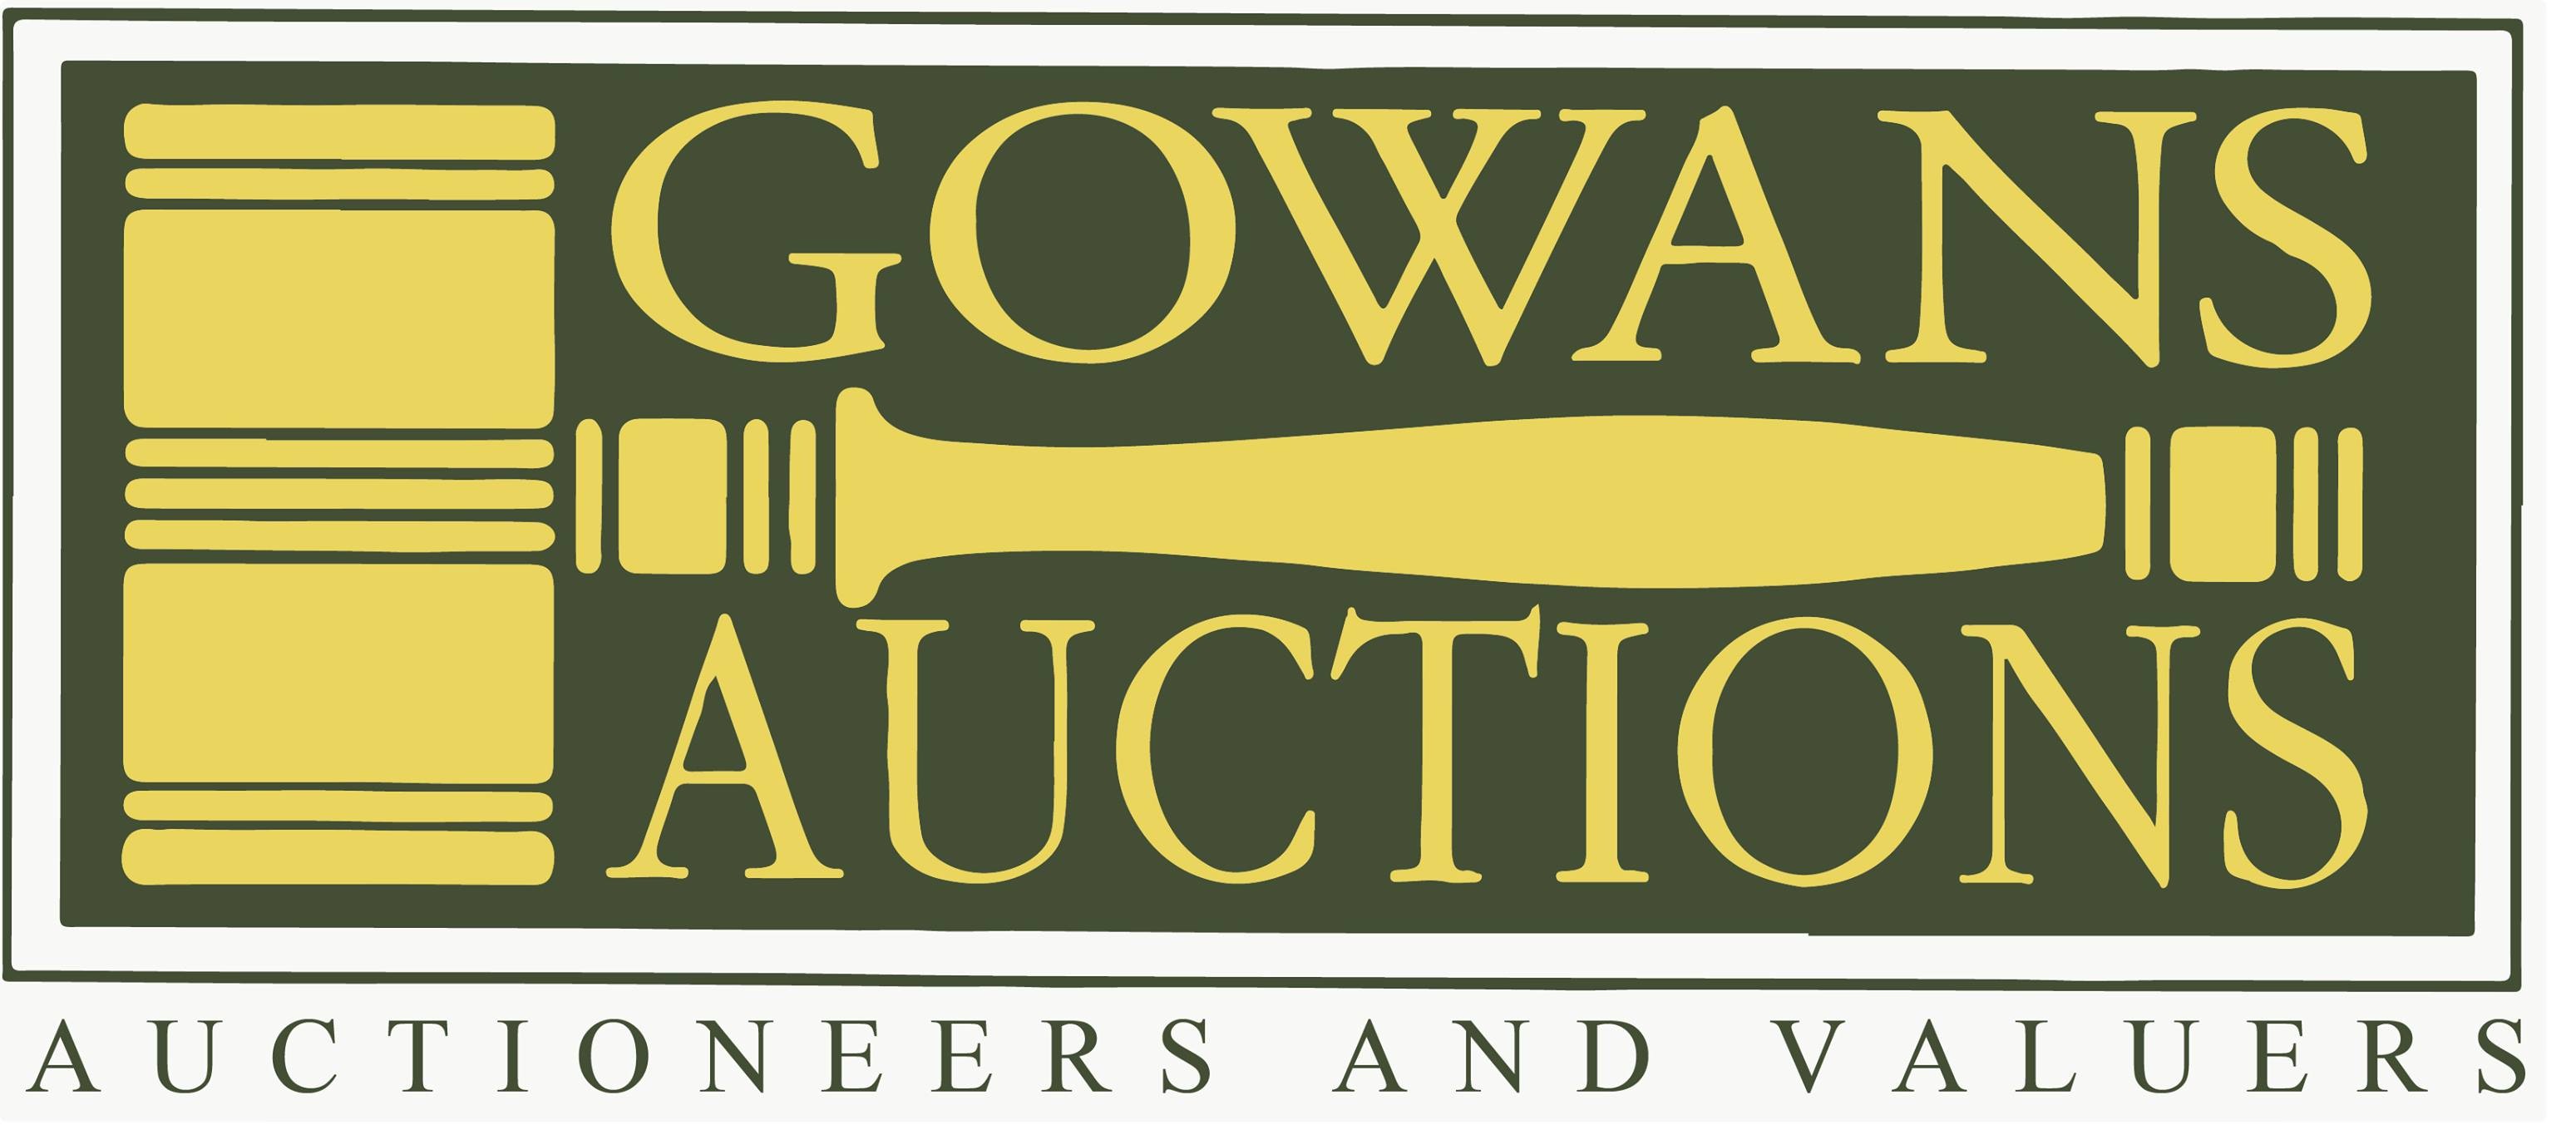 Gowan's Auctions